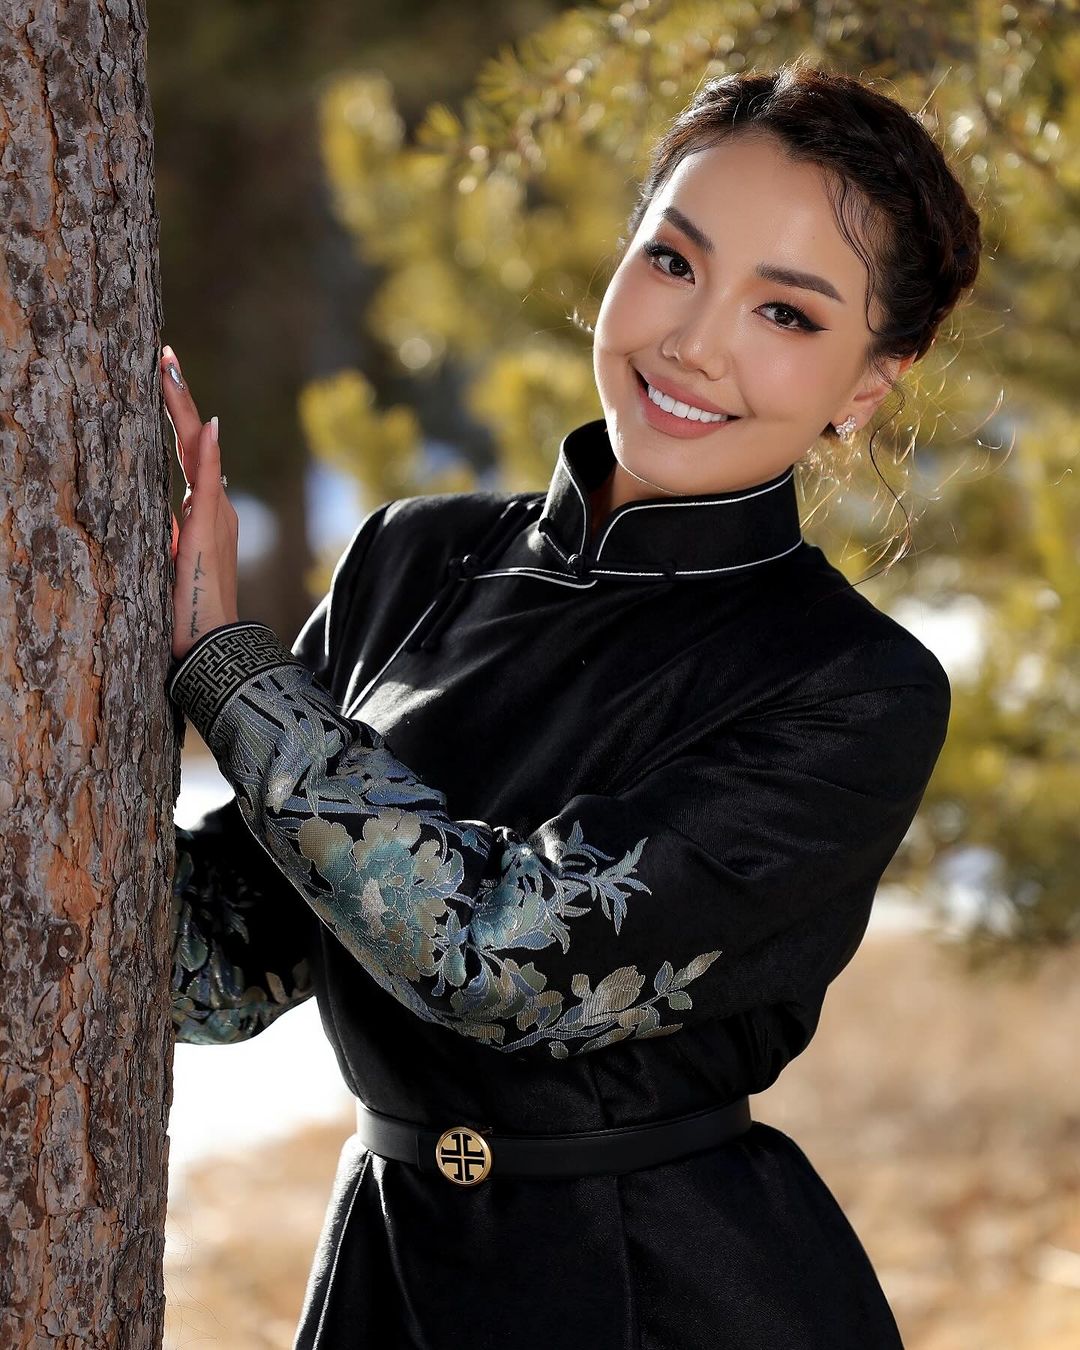 Mongolian women wear black deel clothes